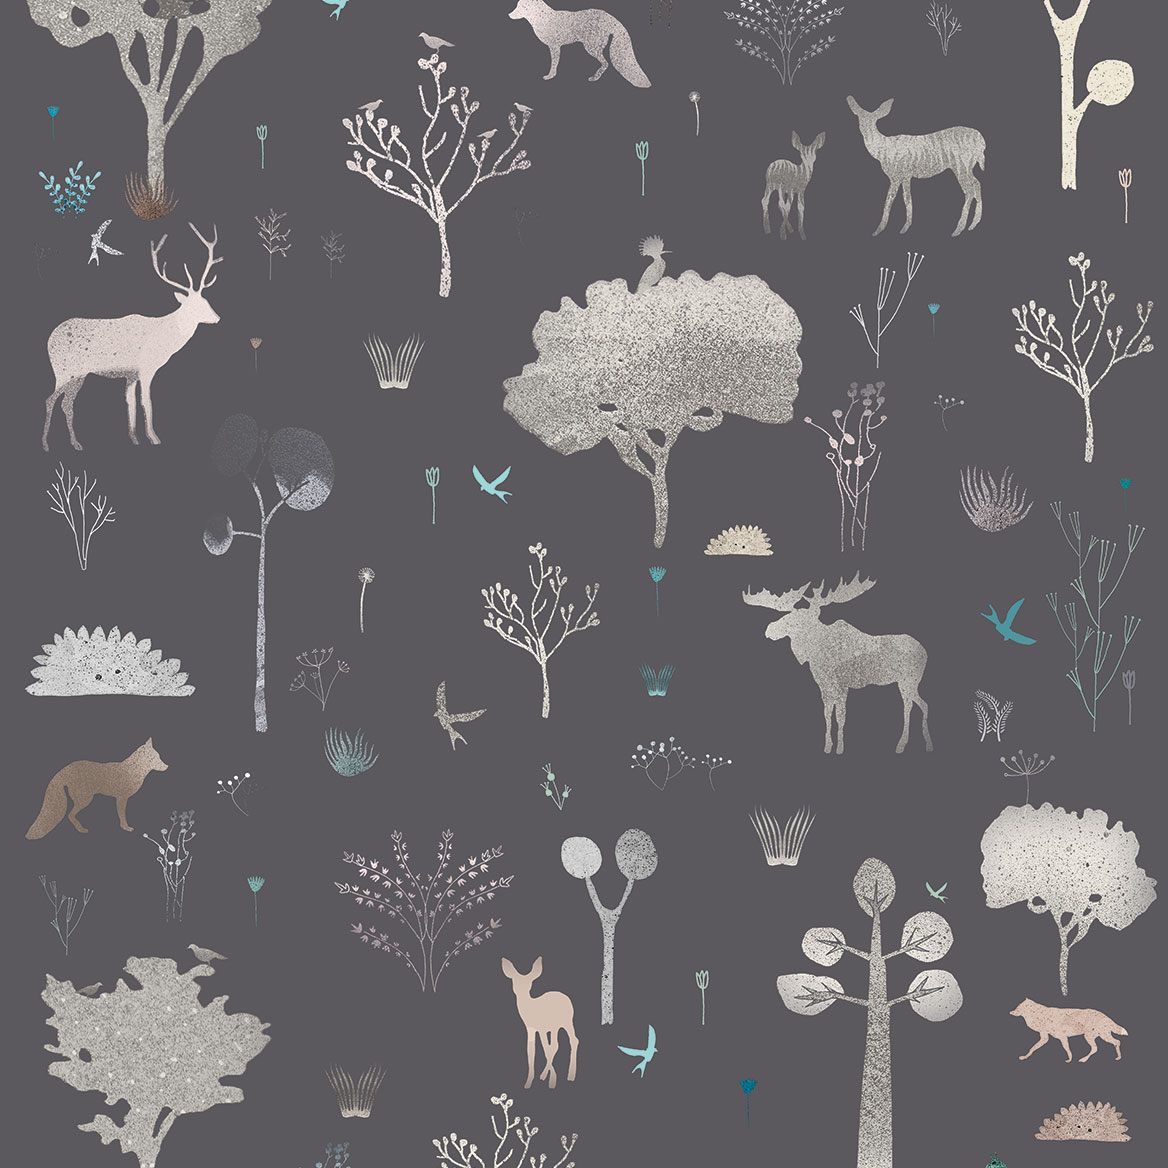 Grey & White Kids Animal Nature Wallpaper pattern